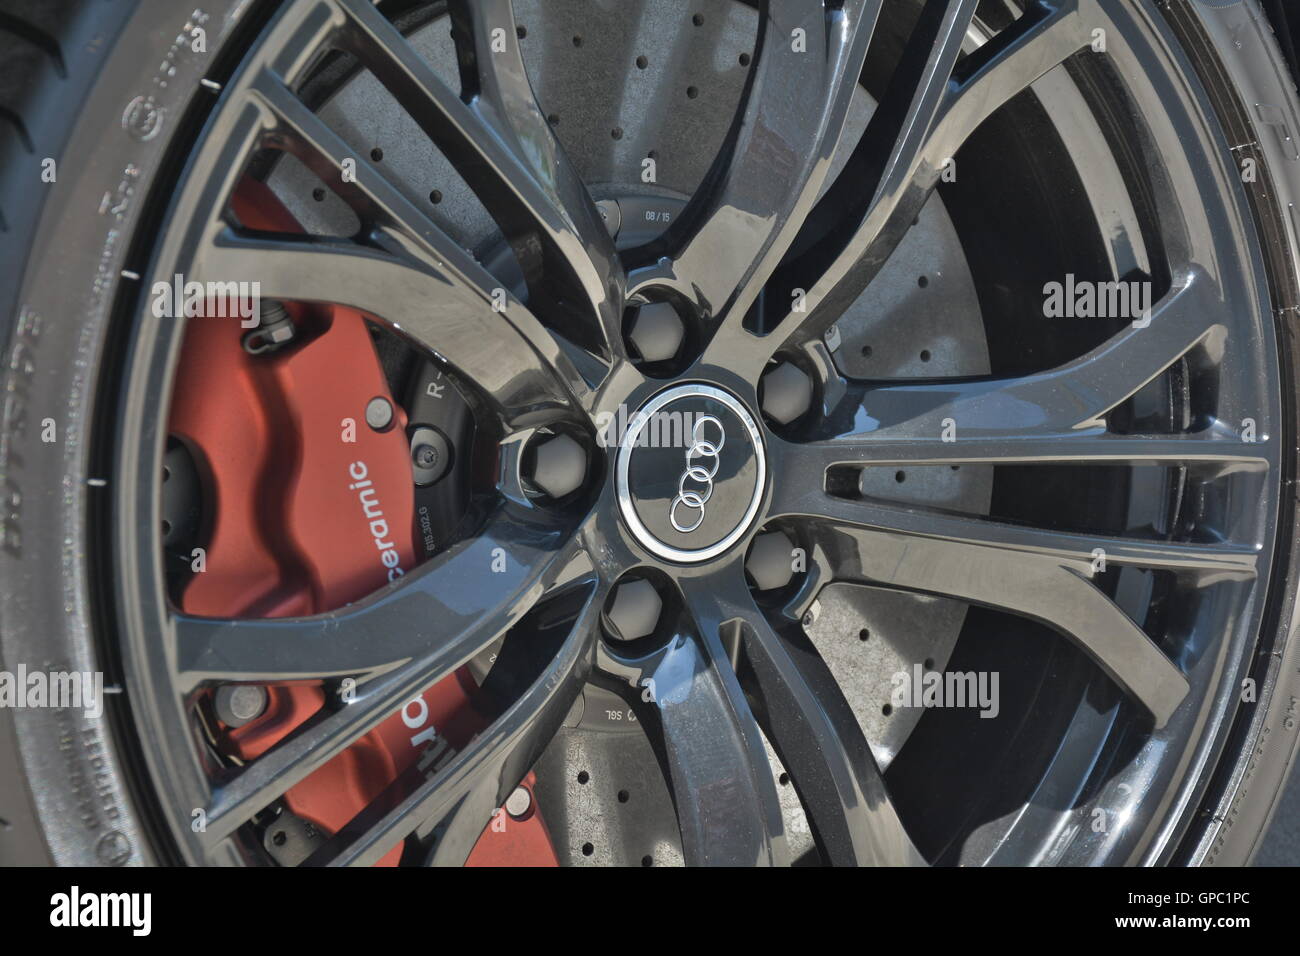 Audi R8 Morton Grove concorrenza in fibra di carbonio nero ruote v8 rossa freni carbonio freni in ceramica ad alta definizione di qualità unica Foto Stock